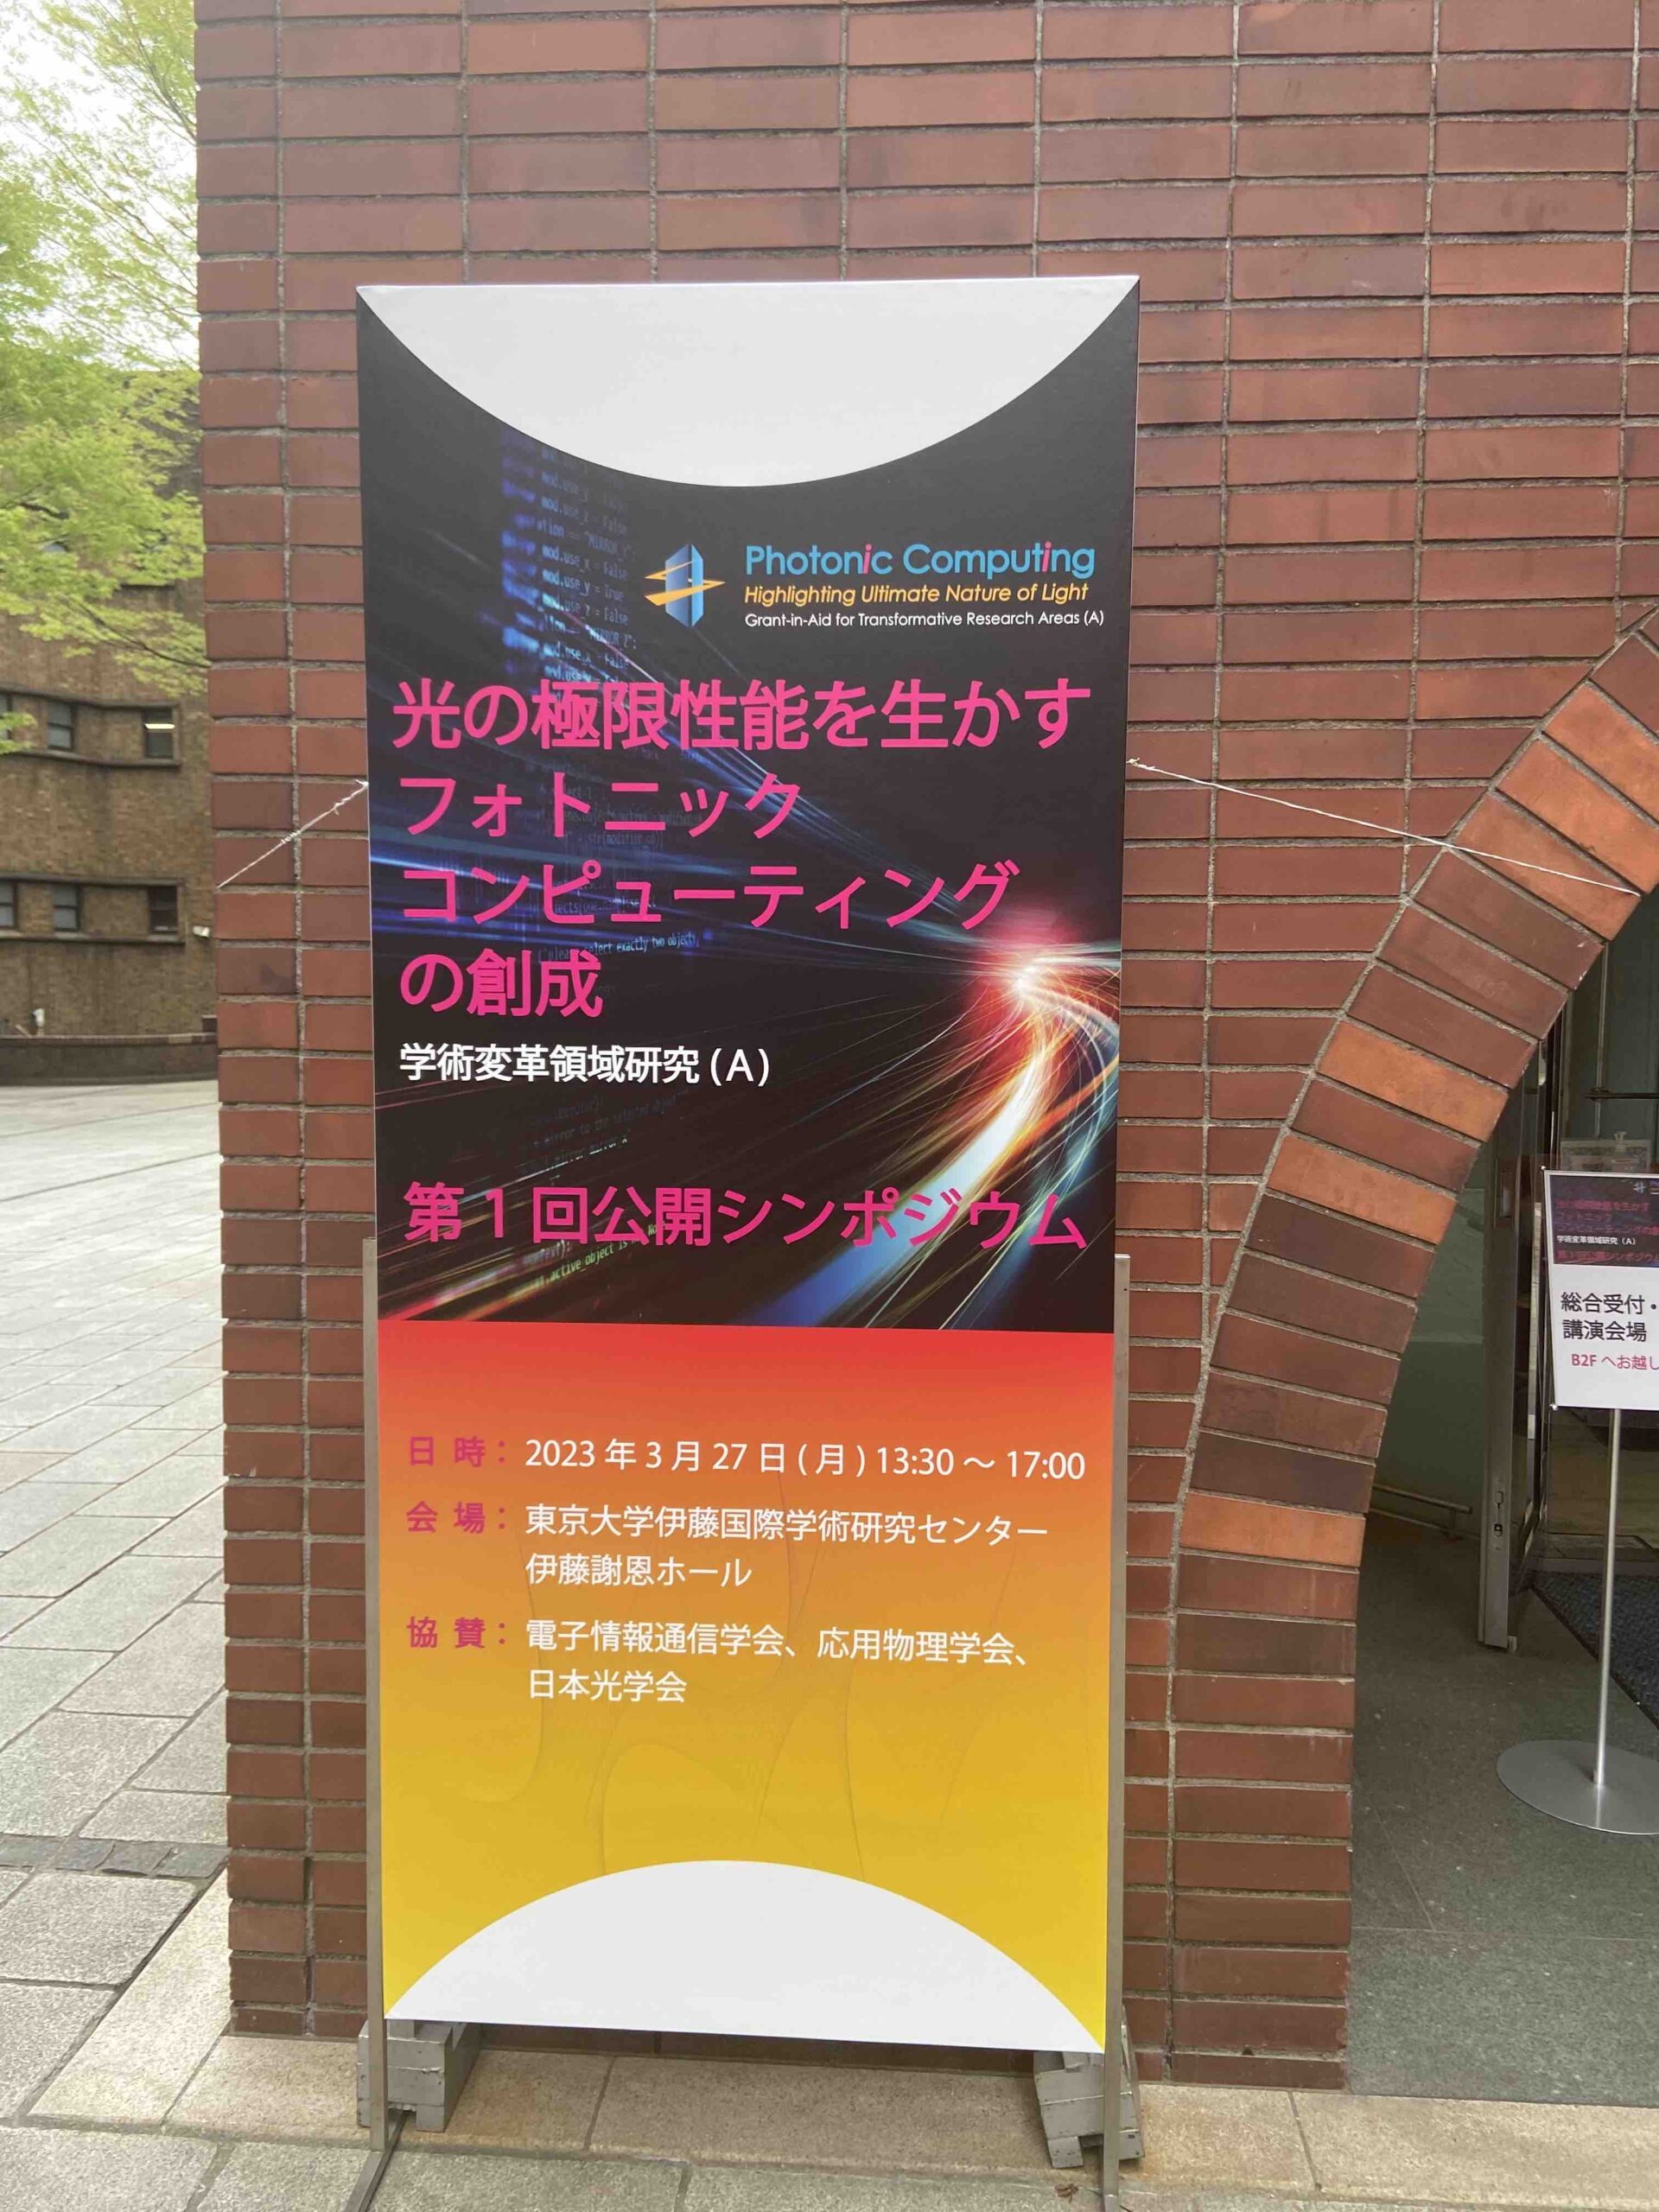 川上哲志さんが東京で開催された「光の極限性能を生かすフォトニックコンピューティングの創成：第1回公開シンポジウム」で講演を行いました。[川上哲志士, 光極限性能を活かす計算機システムの探求]